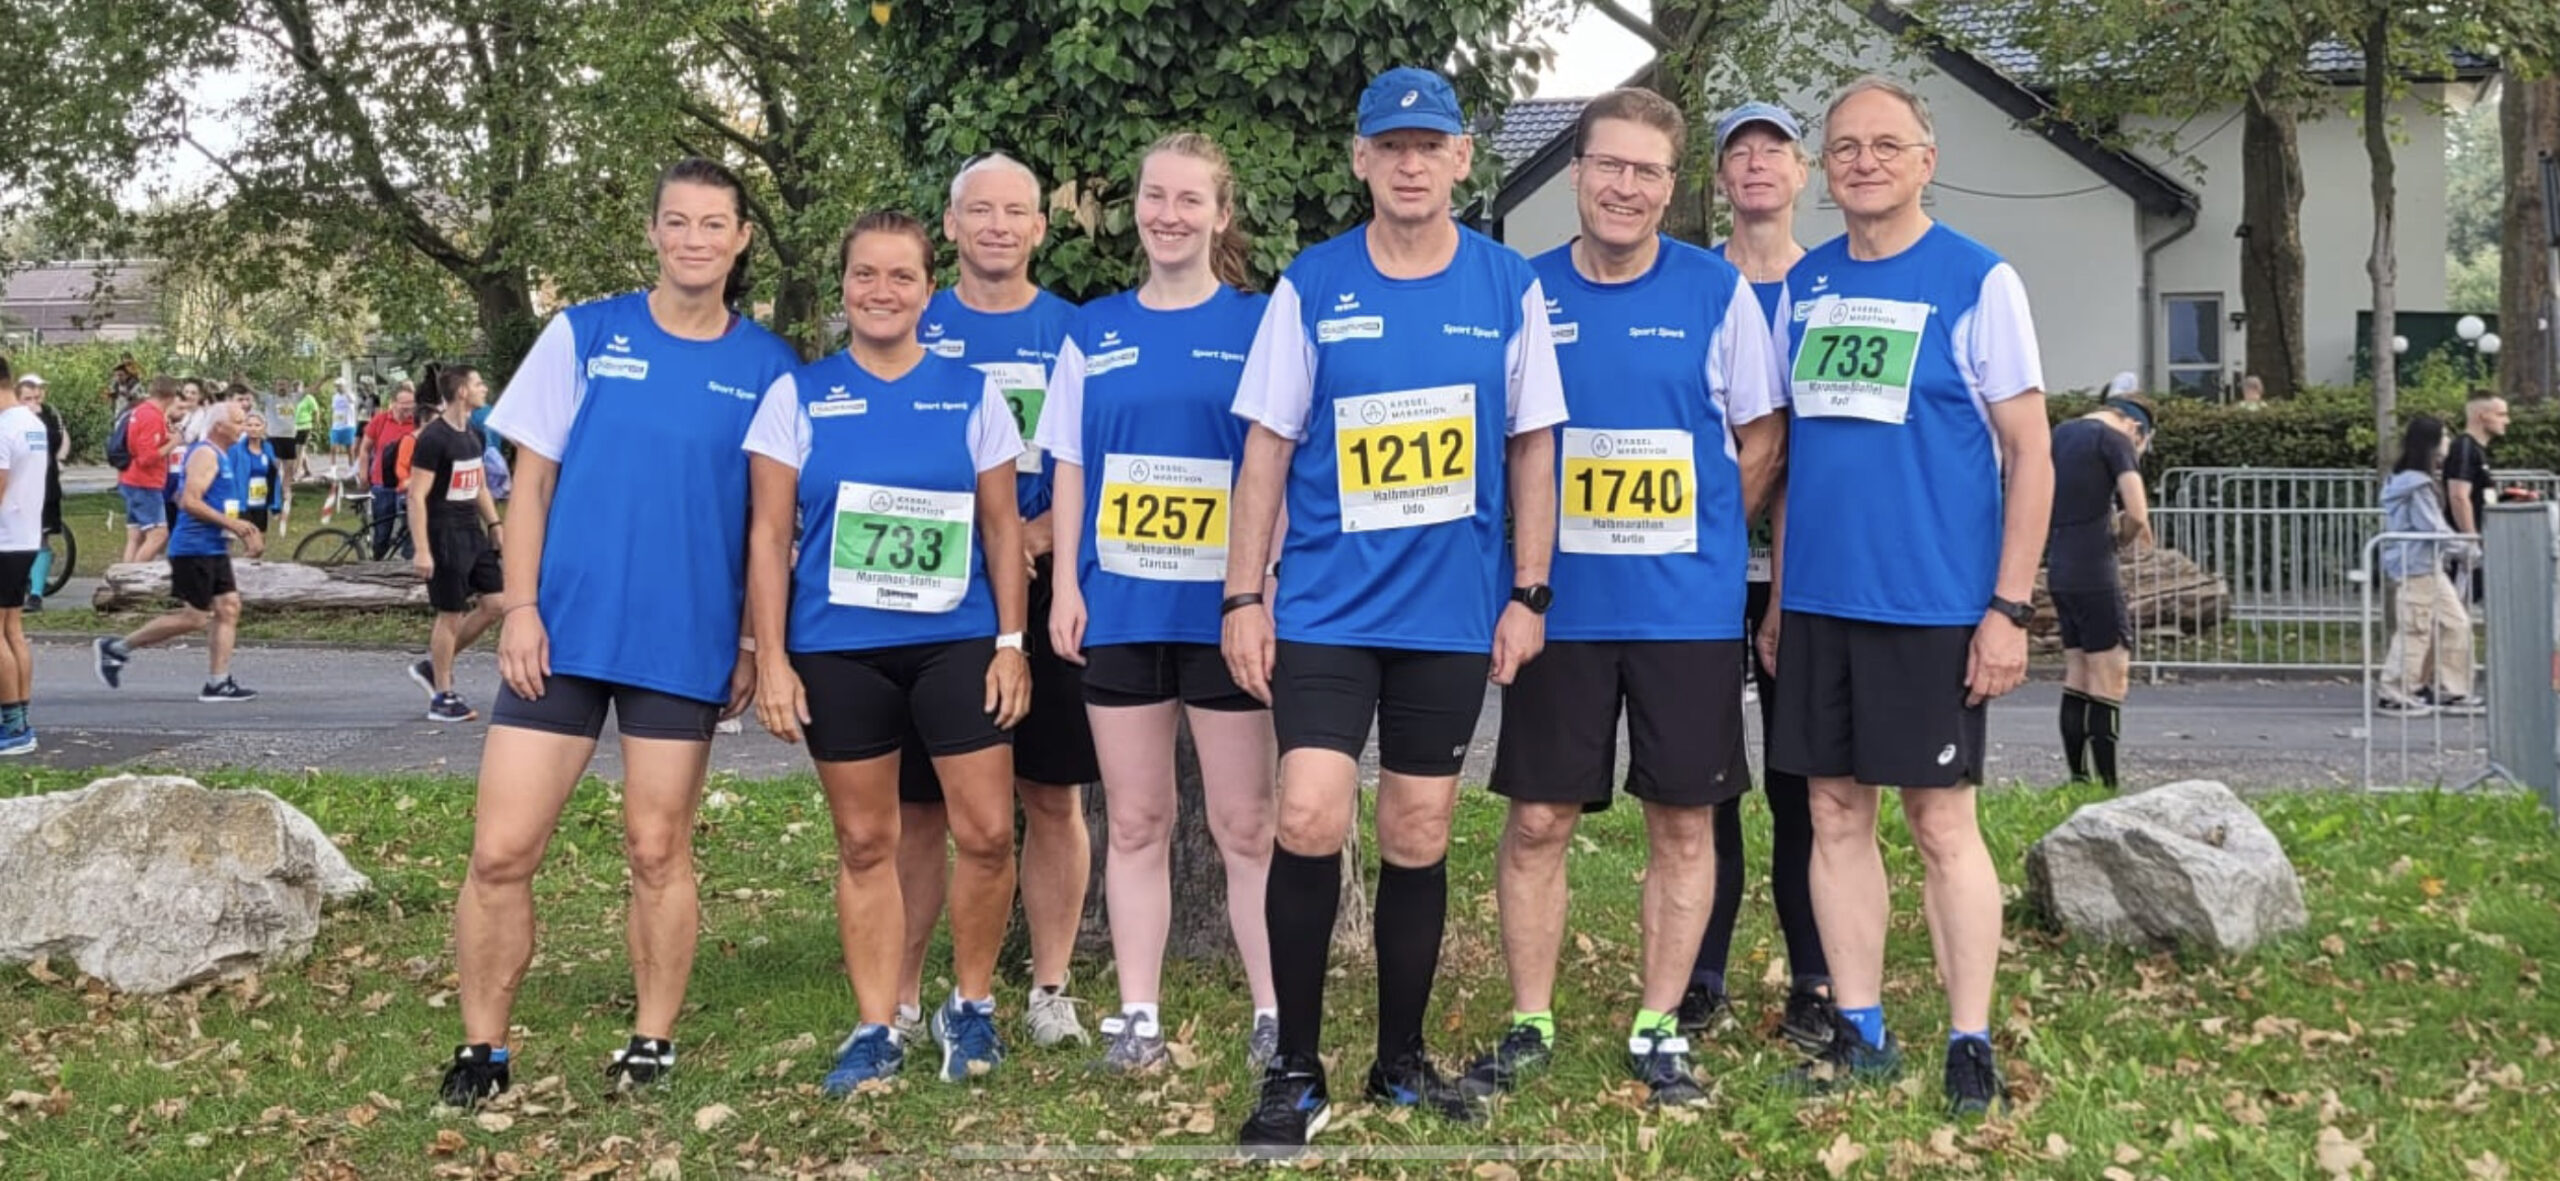 Kassel Marathon: Unsere Teams sind mitgelaufen